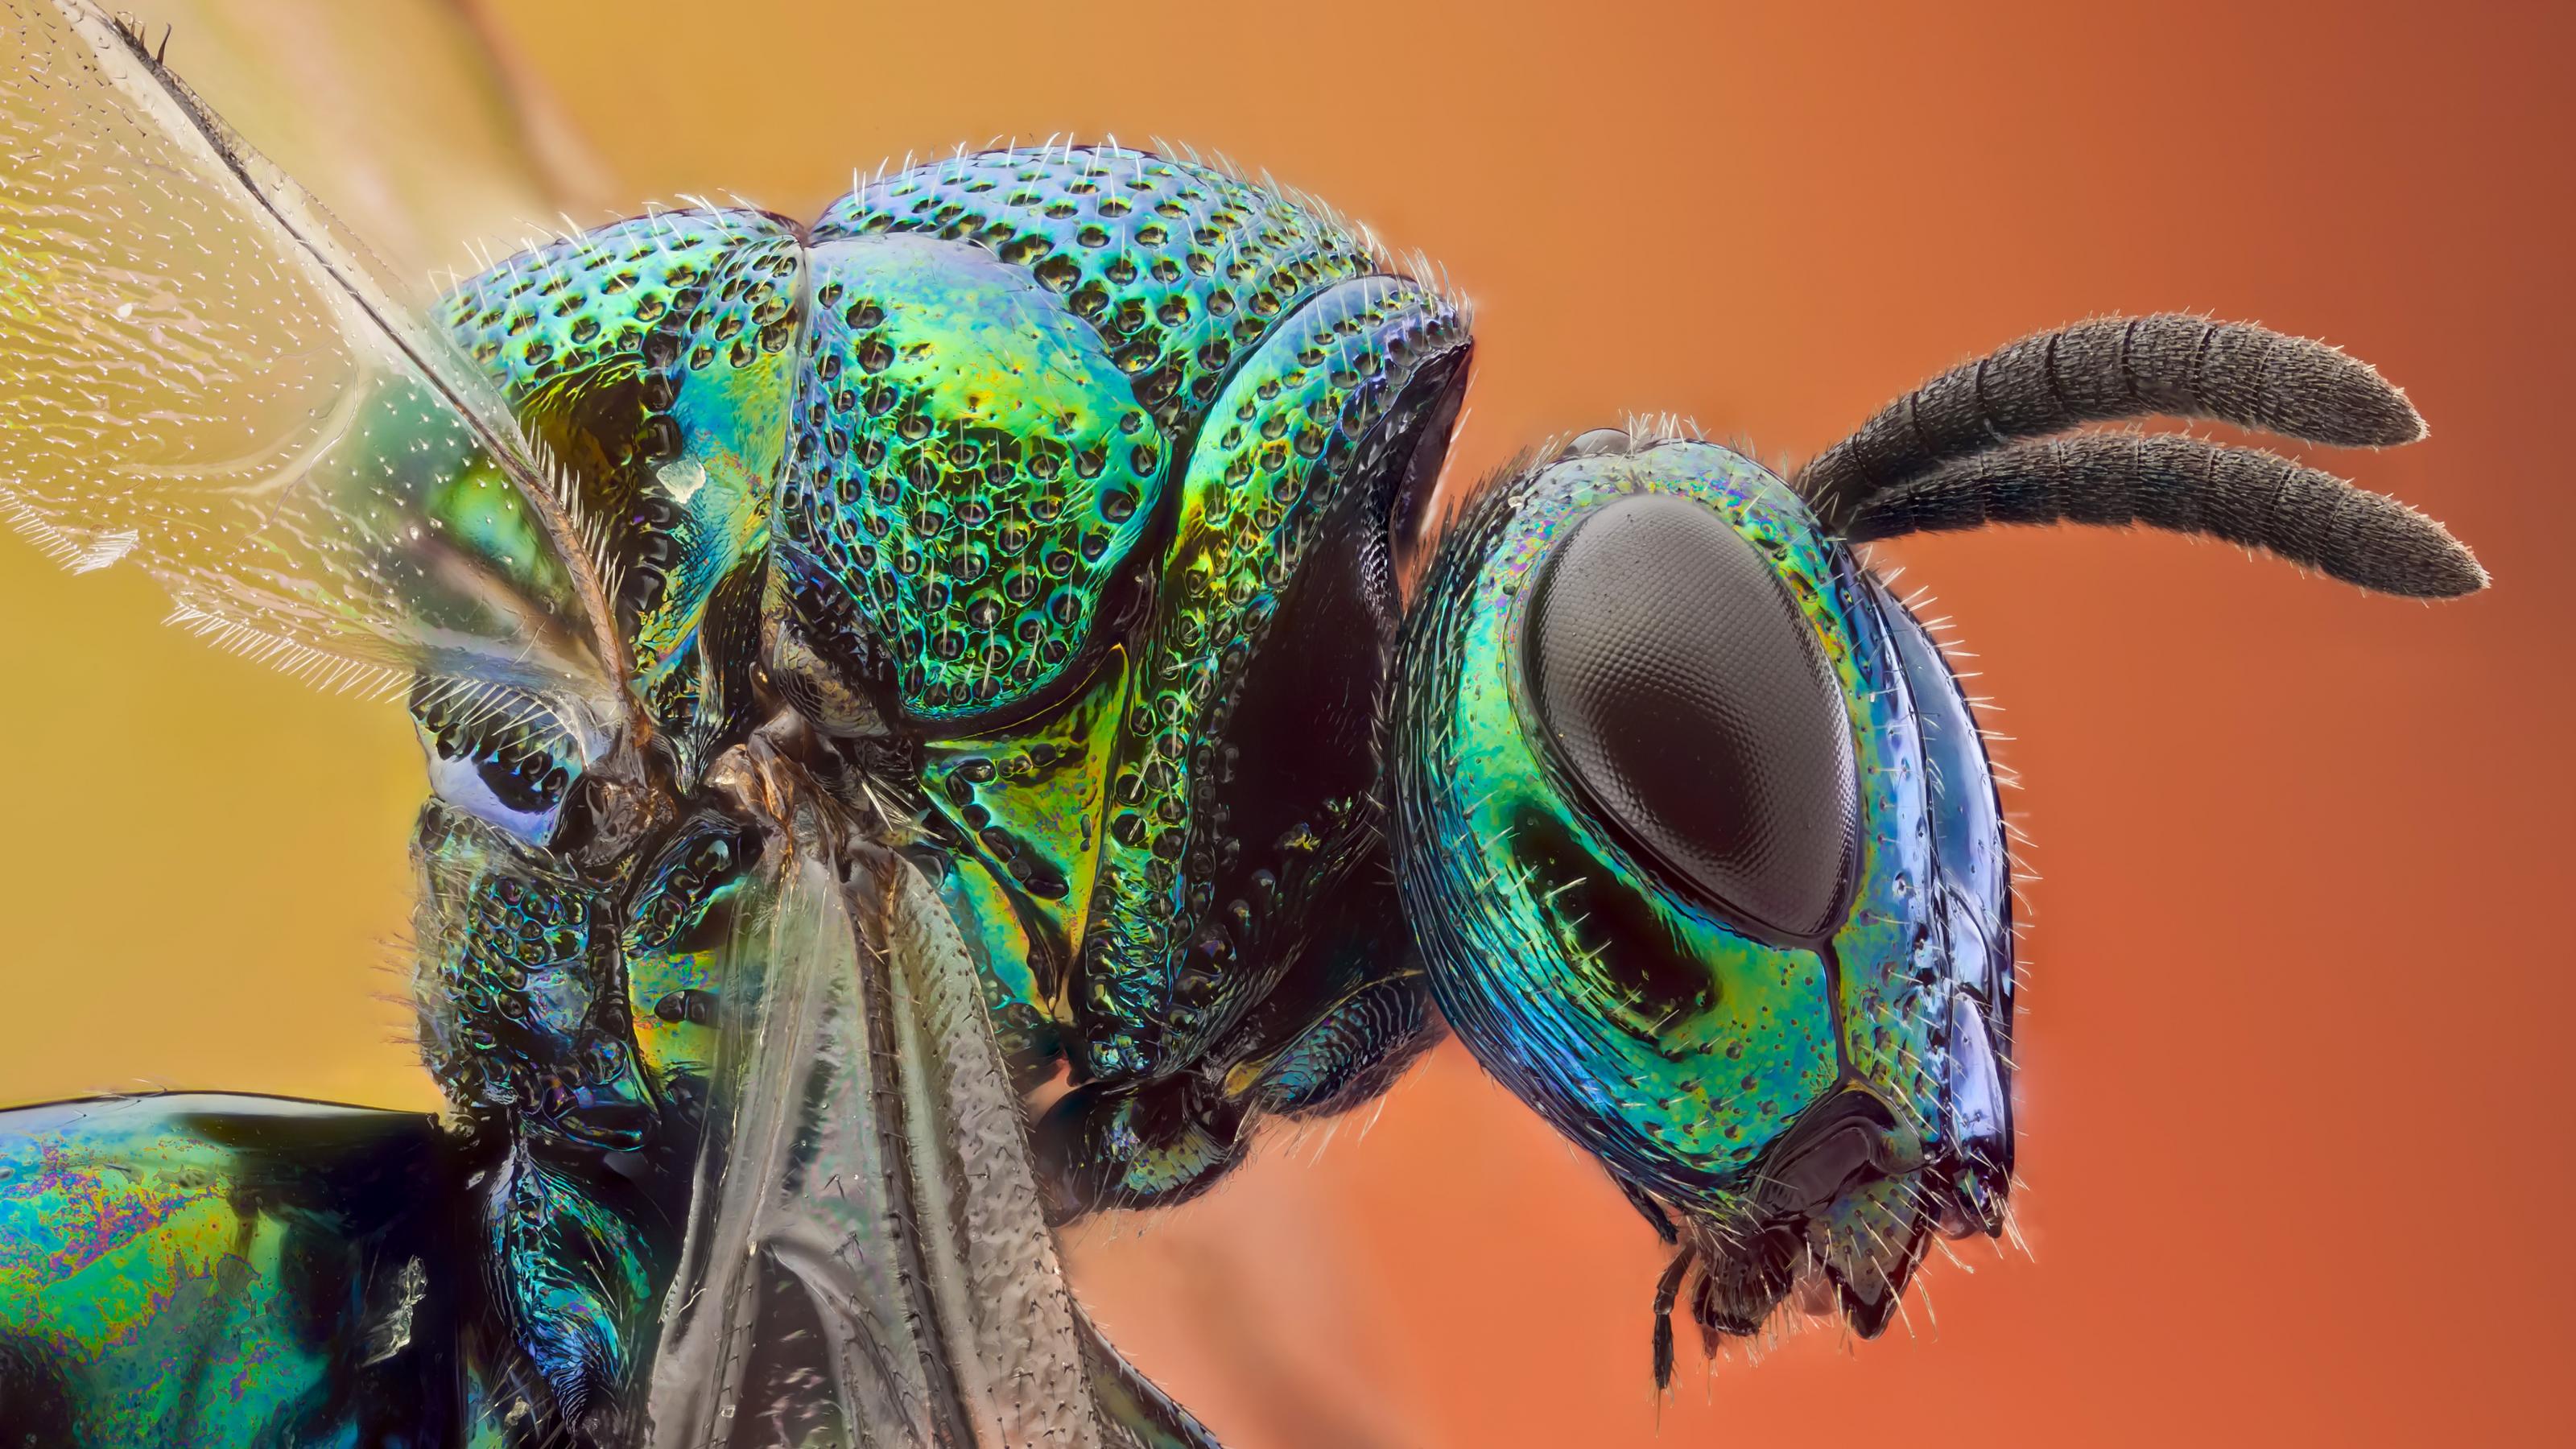 Eine Nahaufnahme zeigt ein grün schimmerndes Insekt.